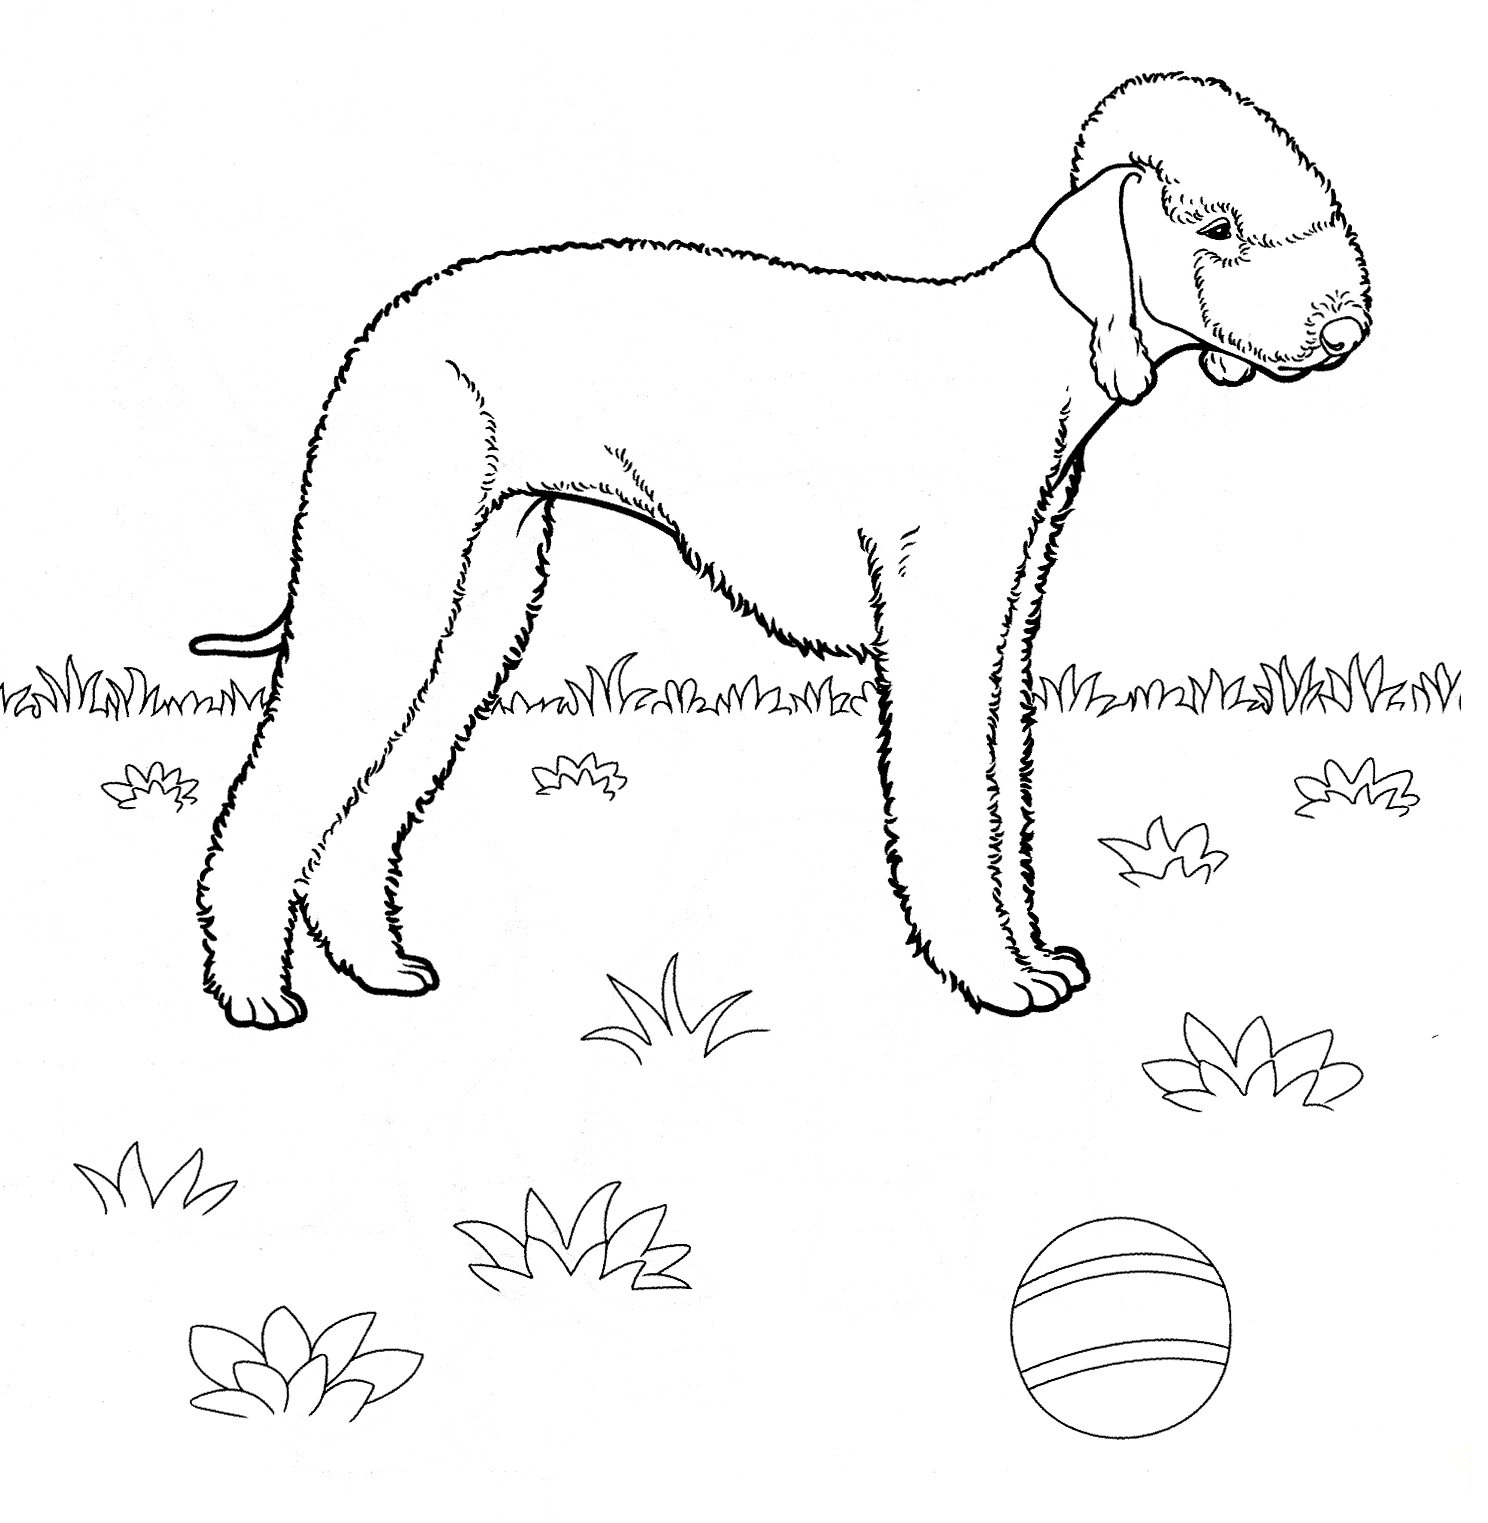 Bedlington Terrier de Chiens